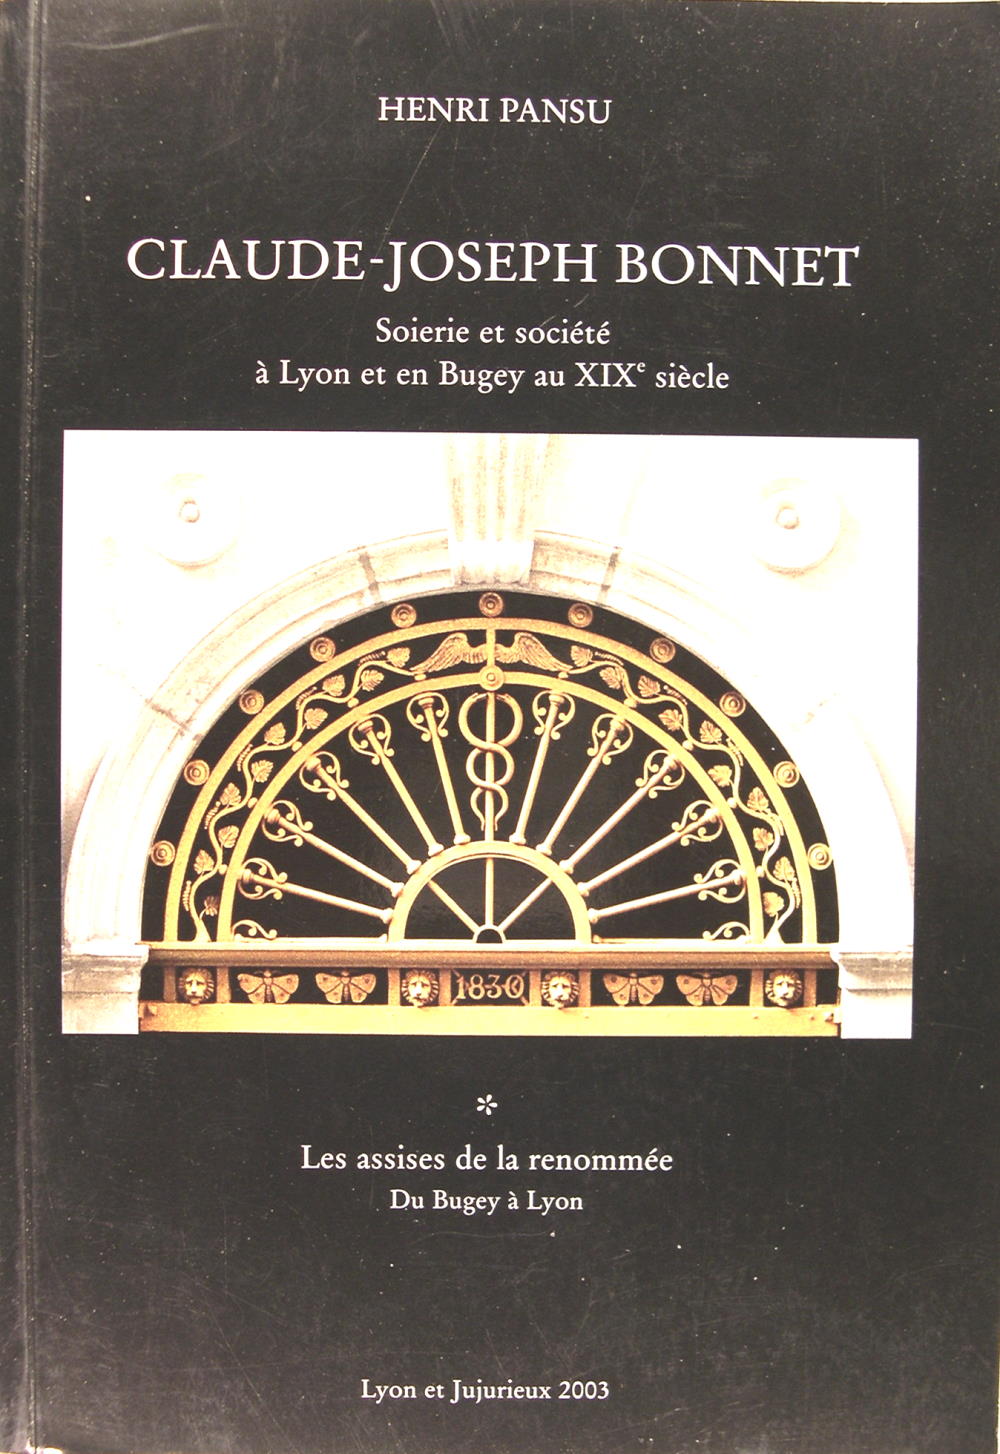 Claude-Joseph Bonne t- Soierie et société à Lyon et en Bugey au XIXé siècle * Les assises de la renommée du Bugey à Lyon. - Henri Pansu